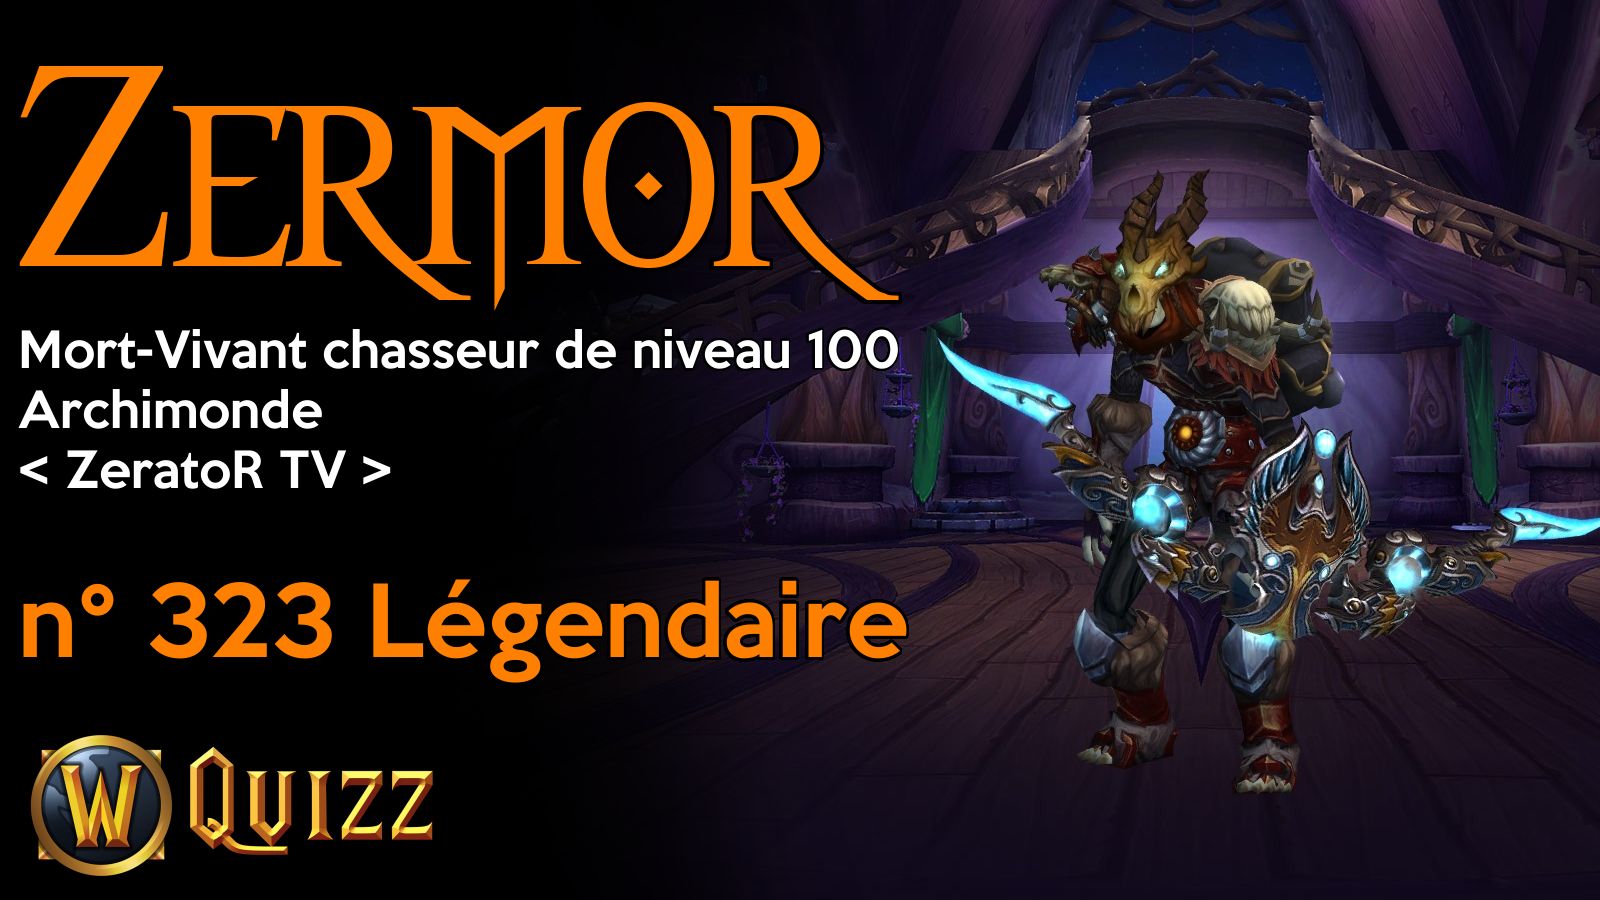 Zermor, Mort-Vivant chasseur de niveau 100, Archimonde